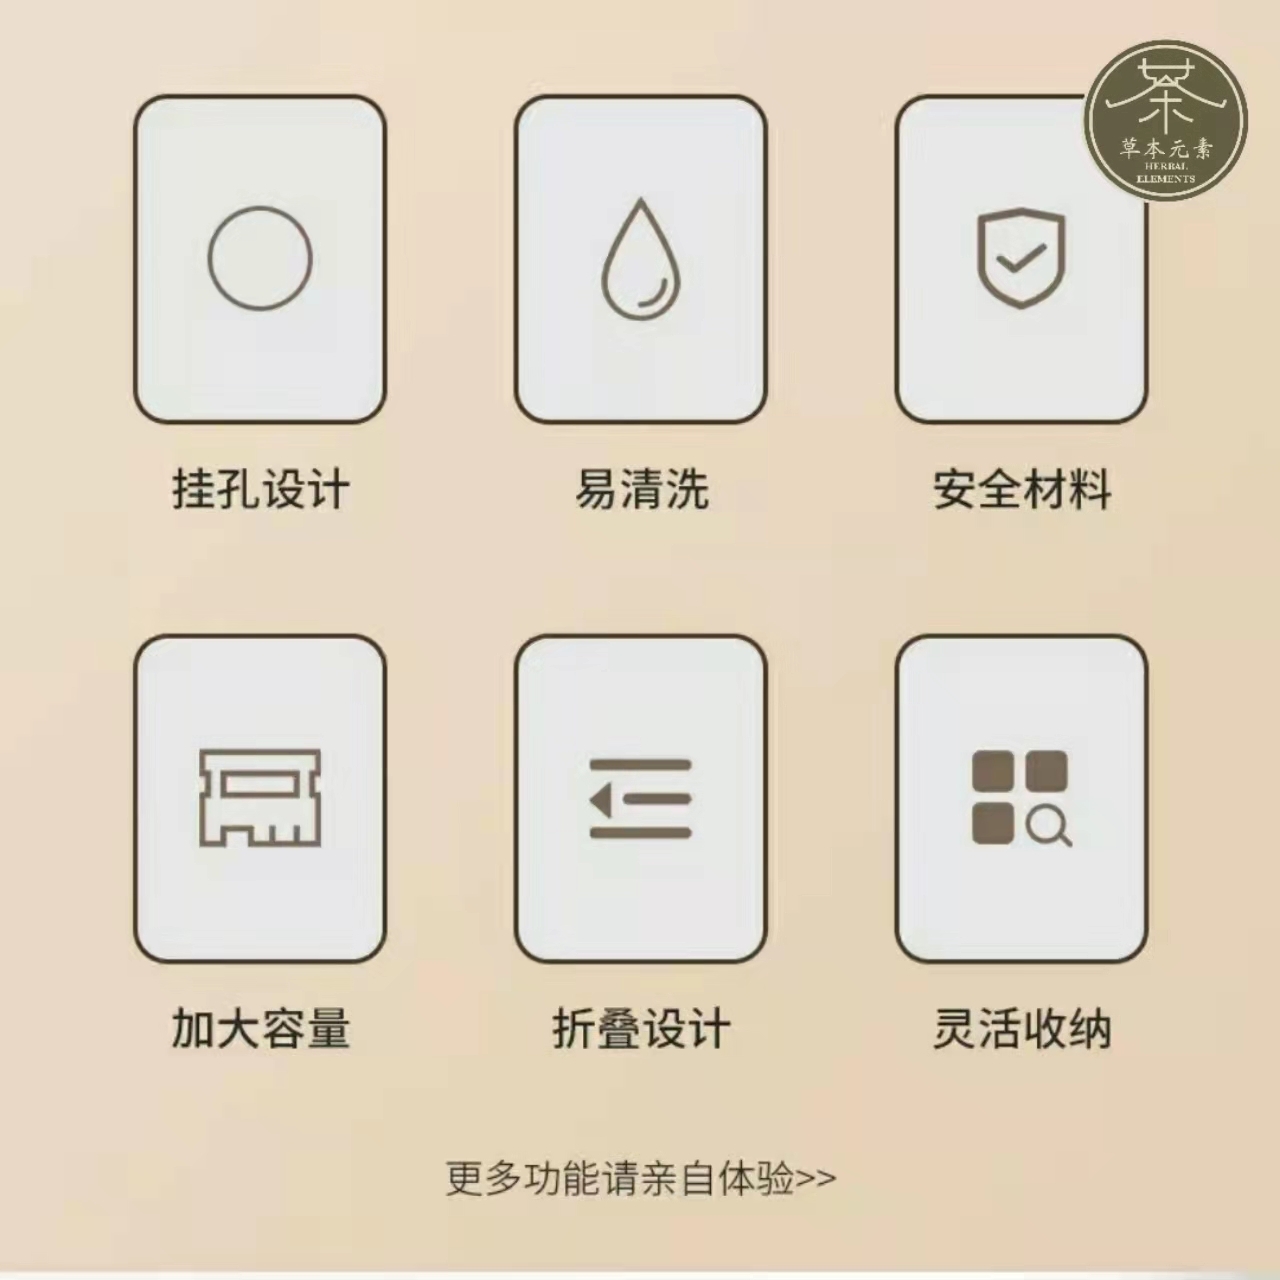 WeChat Image_20220401181521.jpg